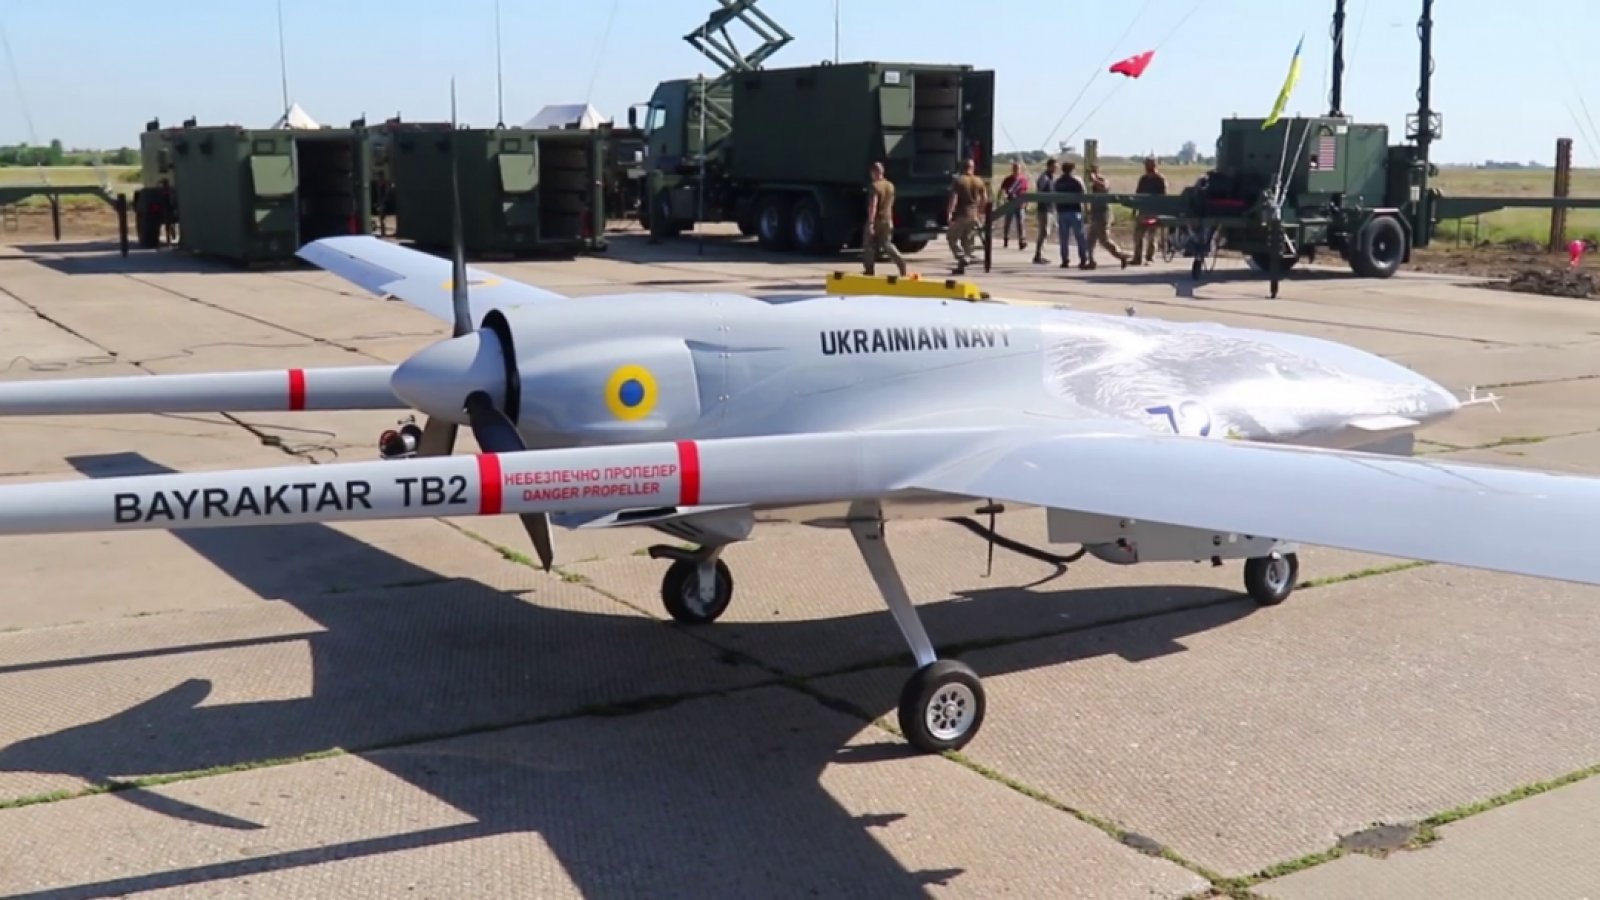 Bayraktar TB2 là mẫu UAV được quân đội Ukraine tích cực sử dụng trong giai đoạn đầu của cuộc xung đột.